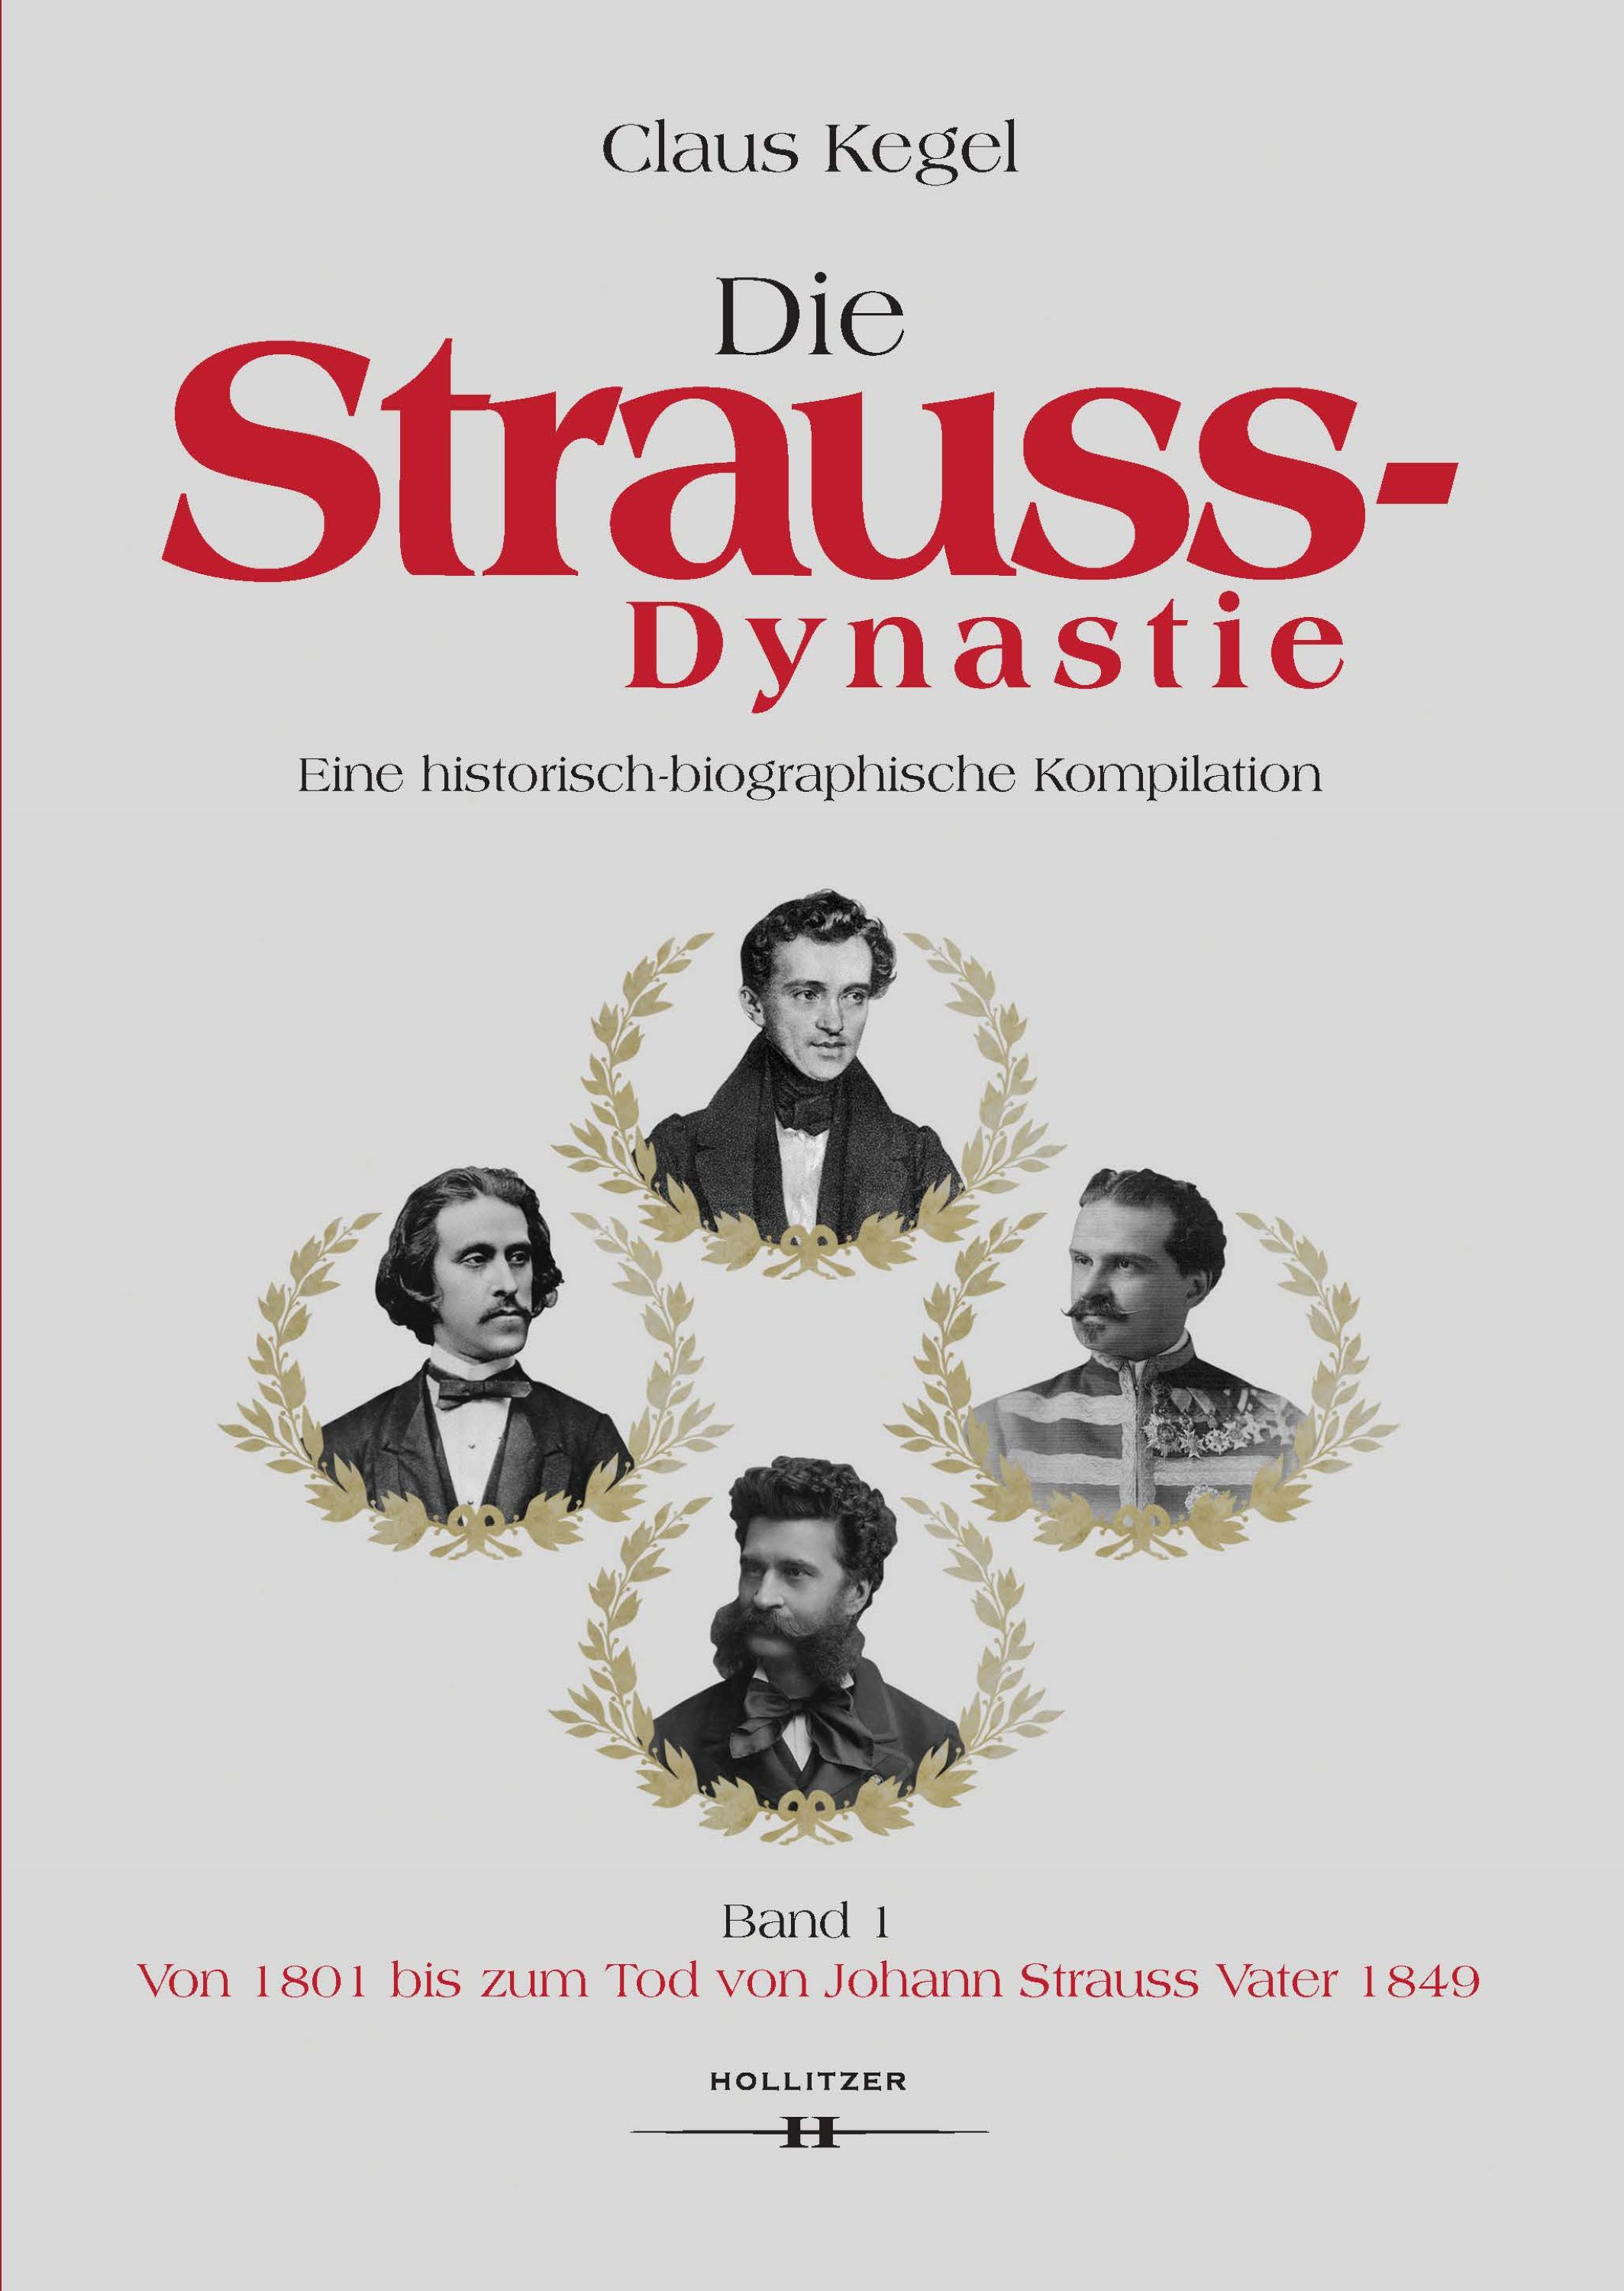 Claus Kegel: Die Strauss-Dynastie. Eine historisch-biographische Kompilation. Band 1: Von 1801 bis zum Tod von Johann Strauss Vater 1849